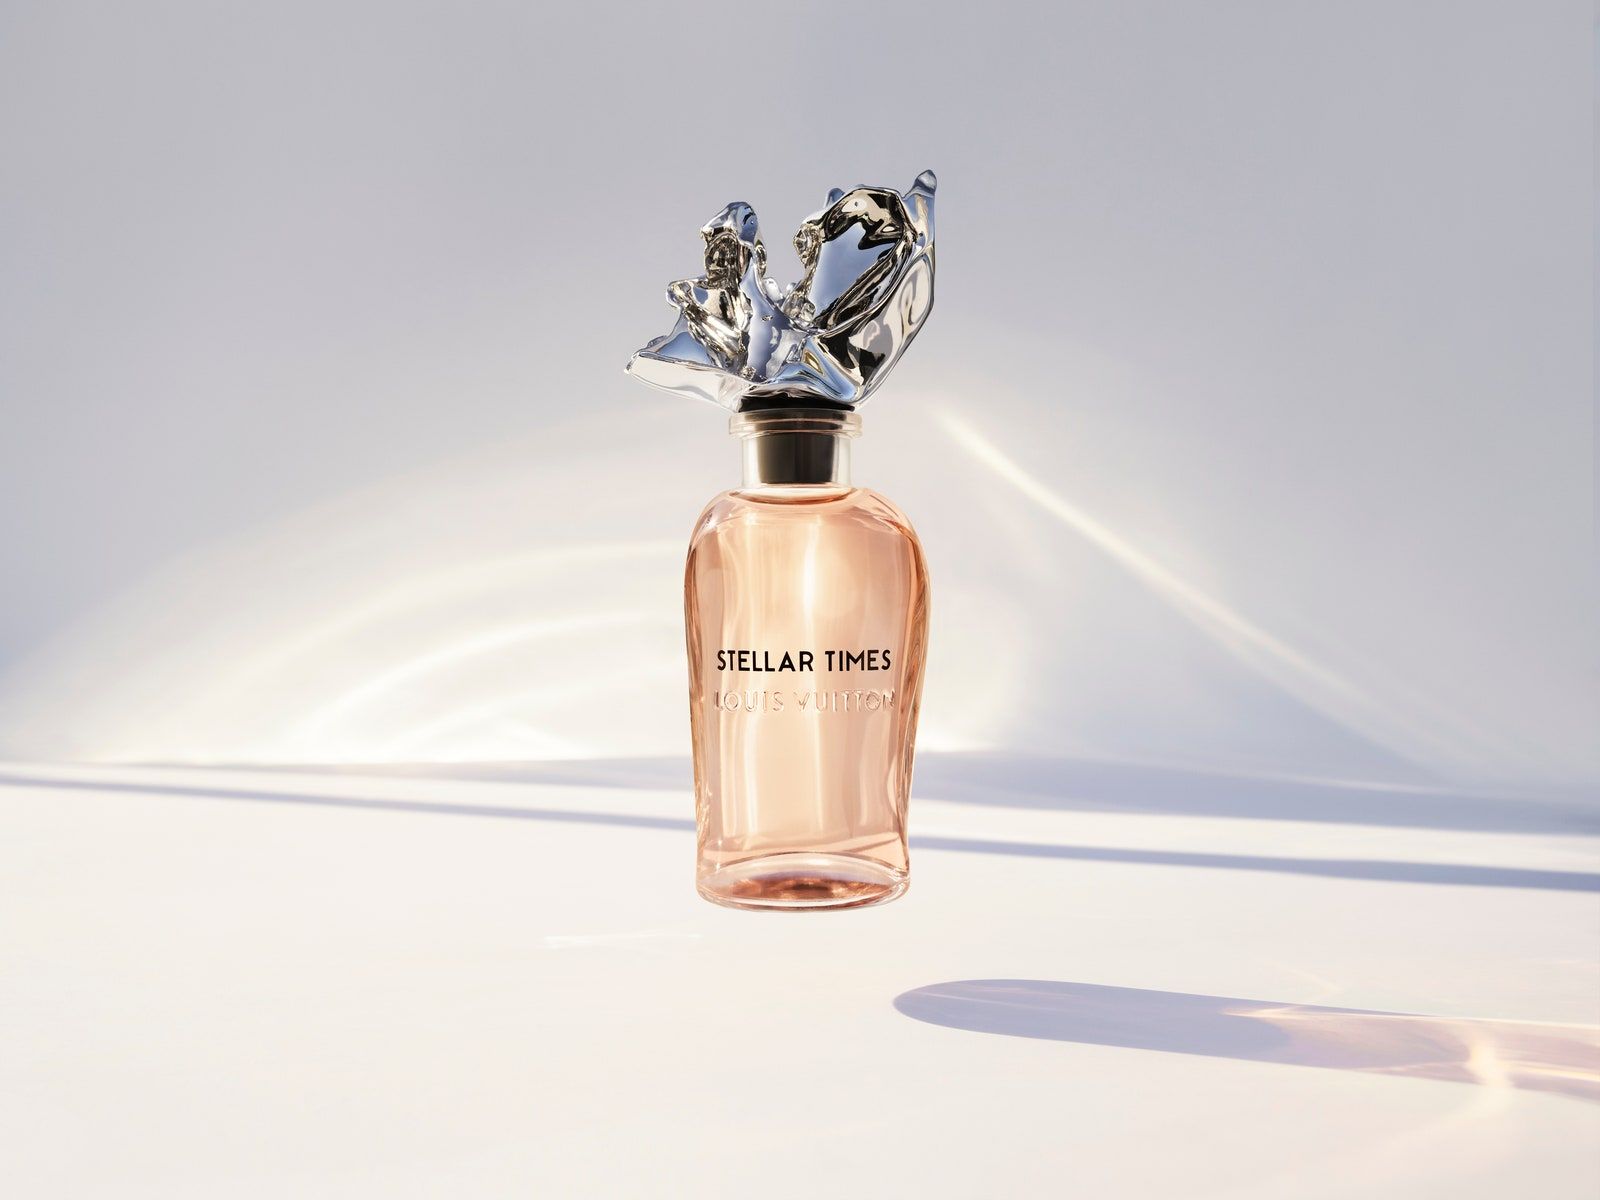 Louis Vuitton unveils Les Sables Roses, a new fragrance that